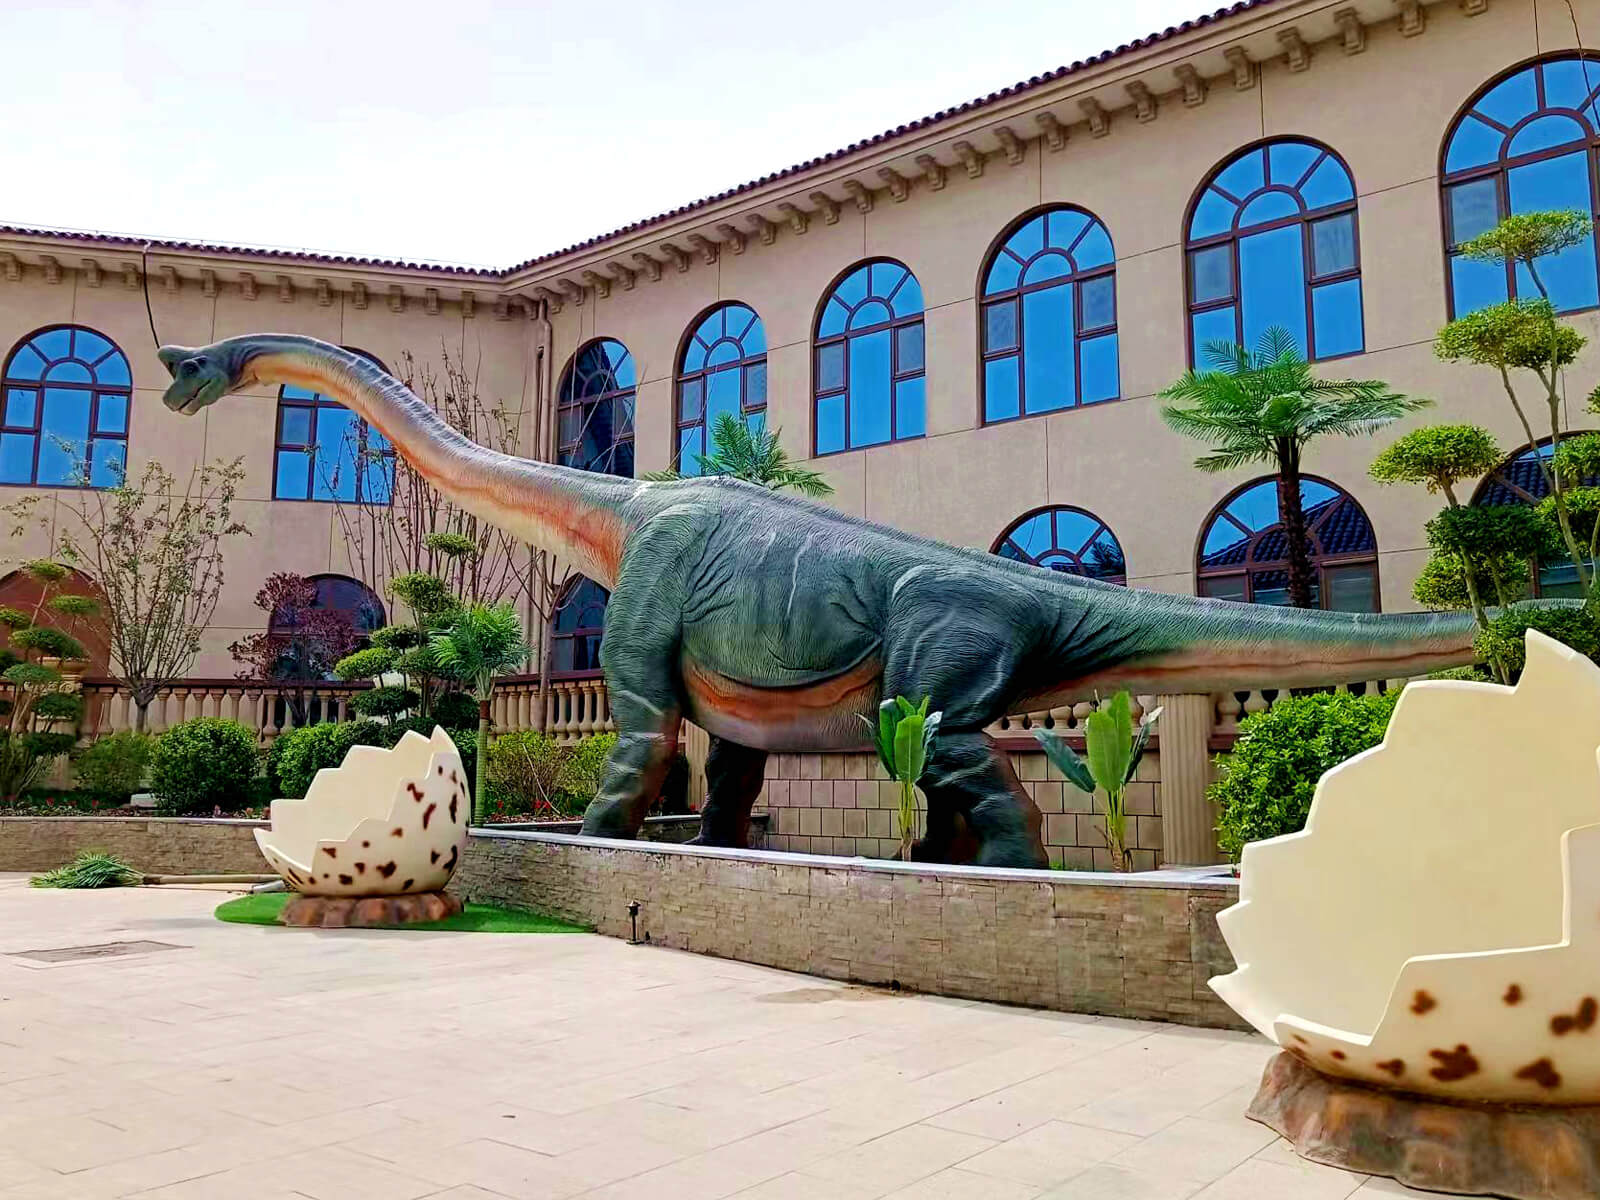 Dinosaurs Outdoor Exhibit in Dezhou